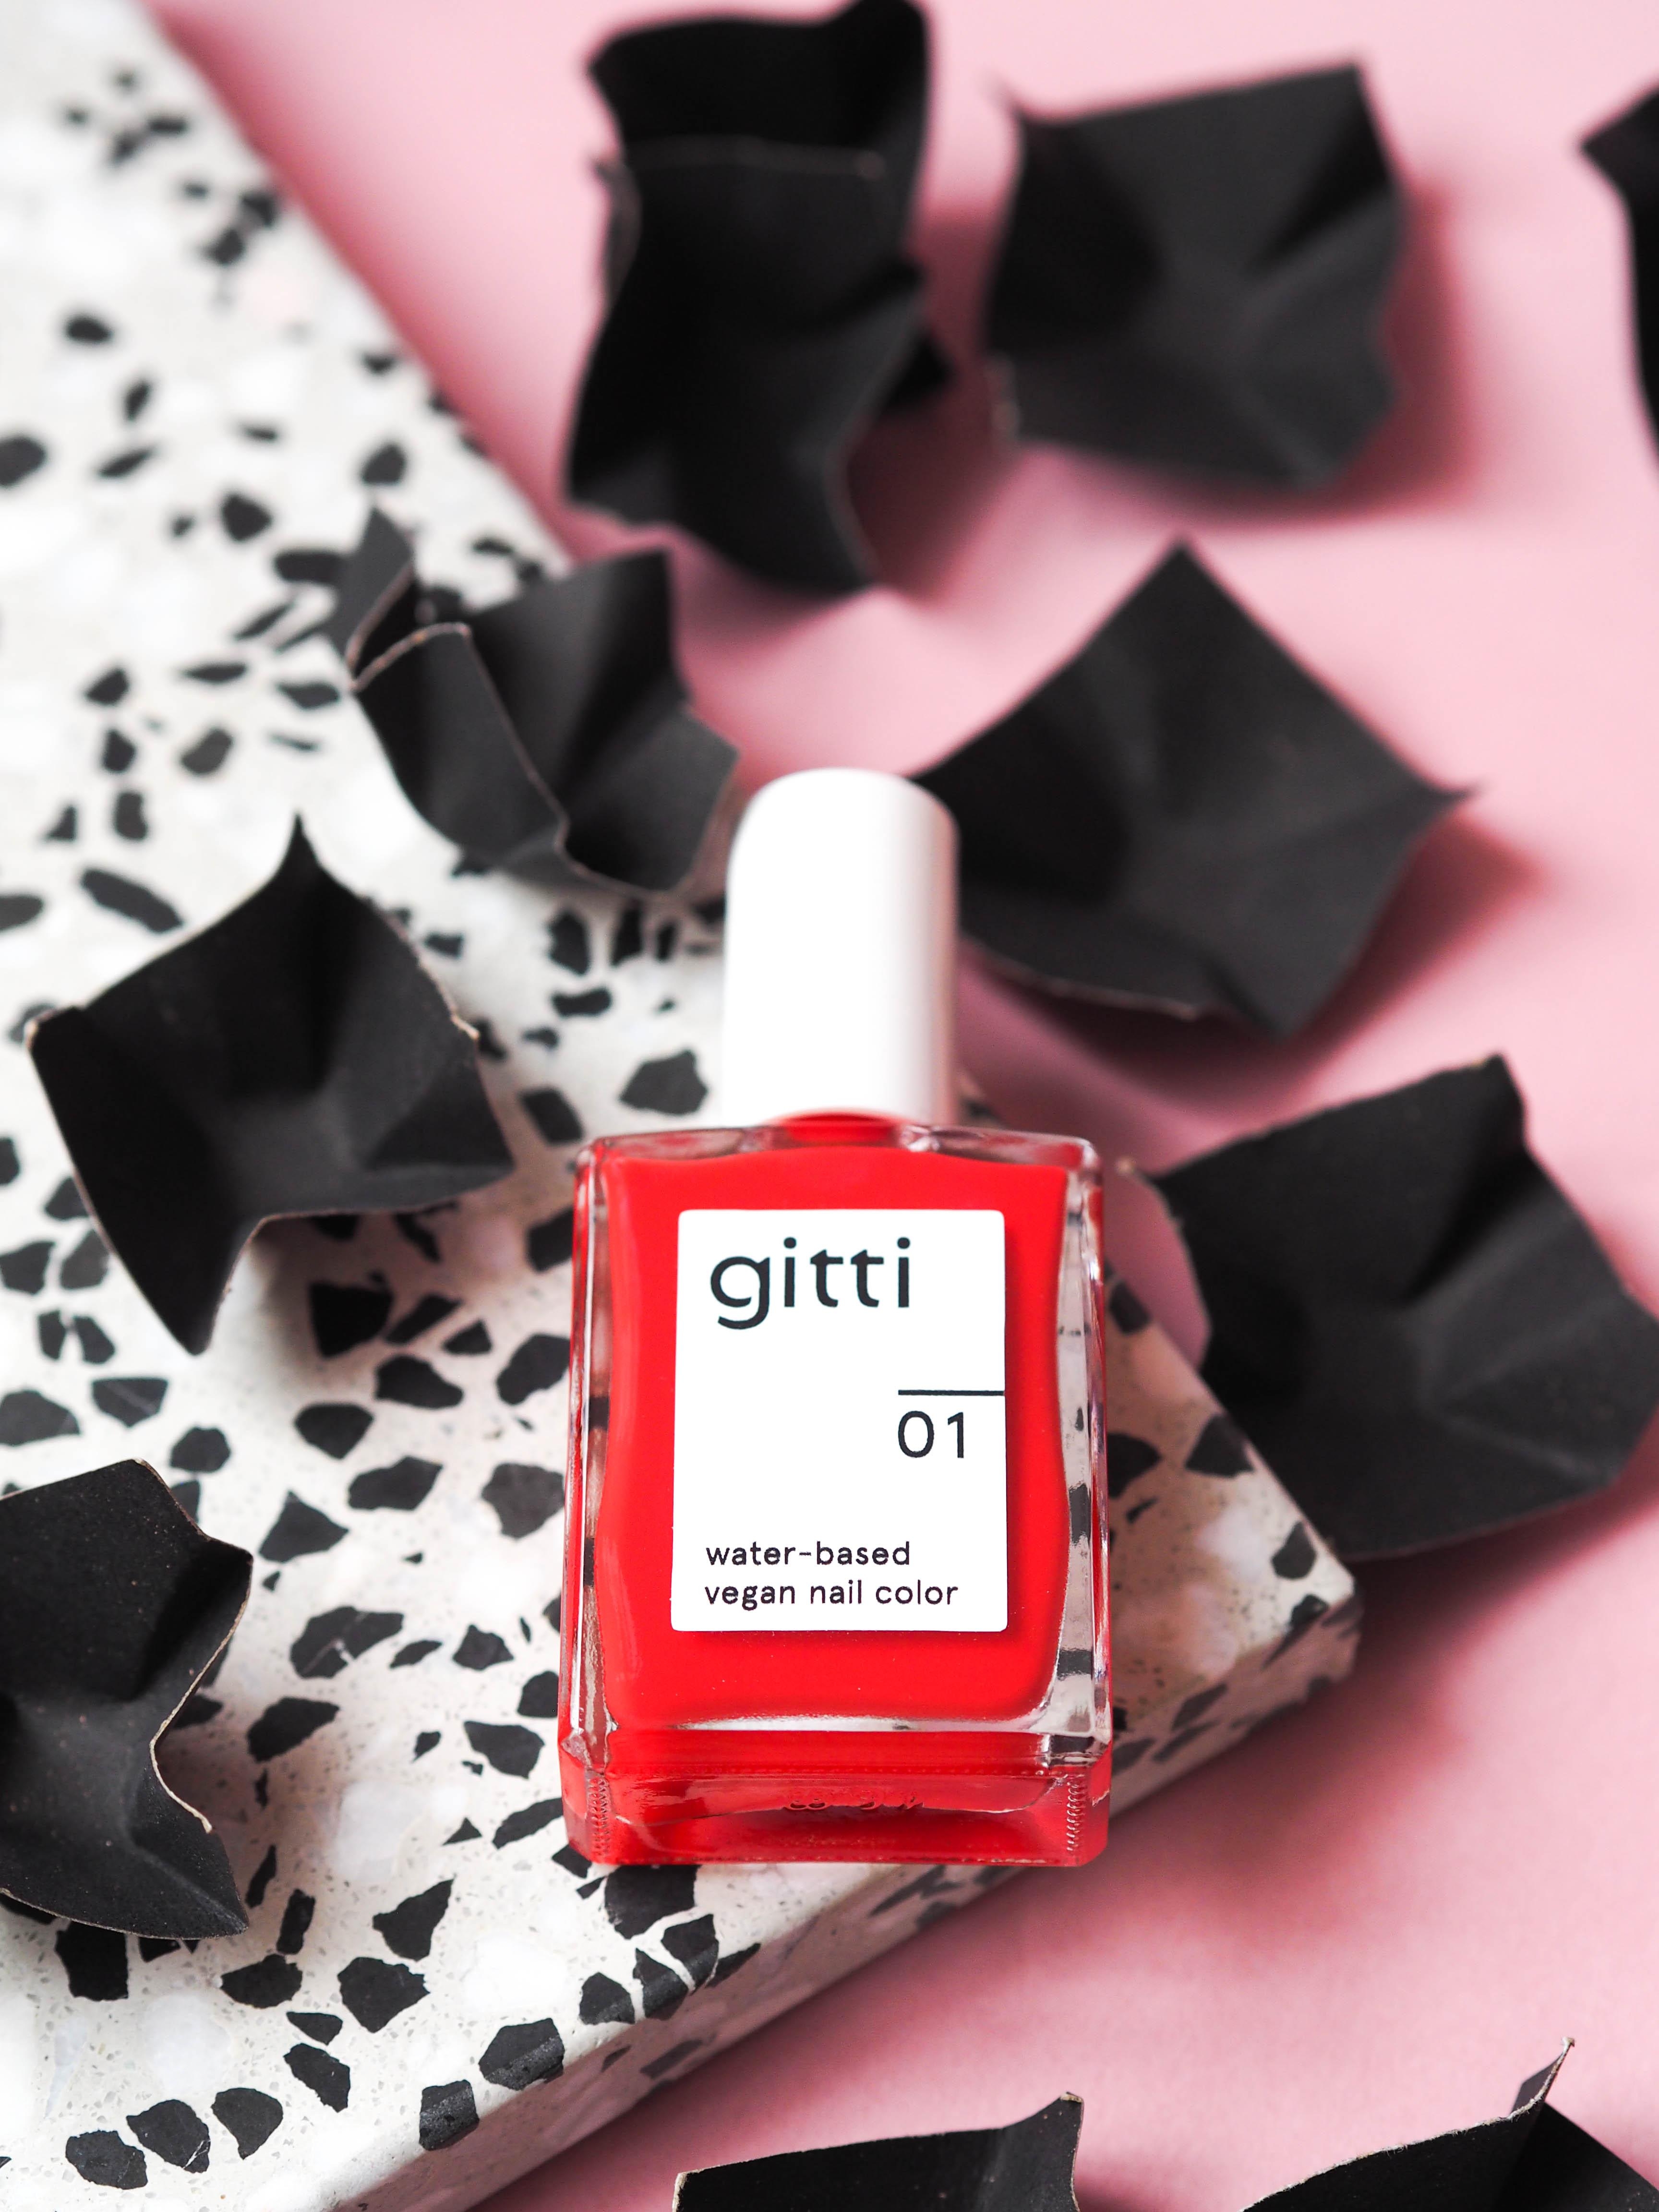 Coming soon: Das brandneue Label Gitti setzt auf wasserbasierte Lacke – ohne lästigen Geruch! #beautylieblinge #gitti